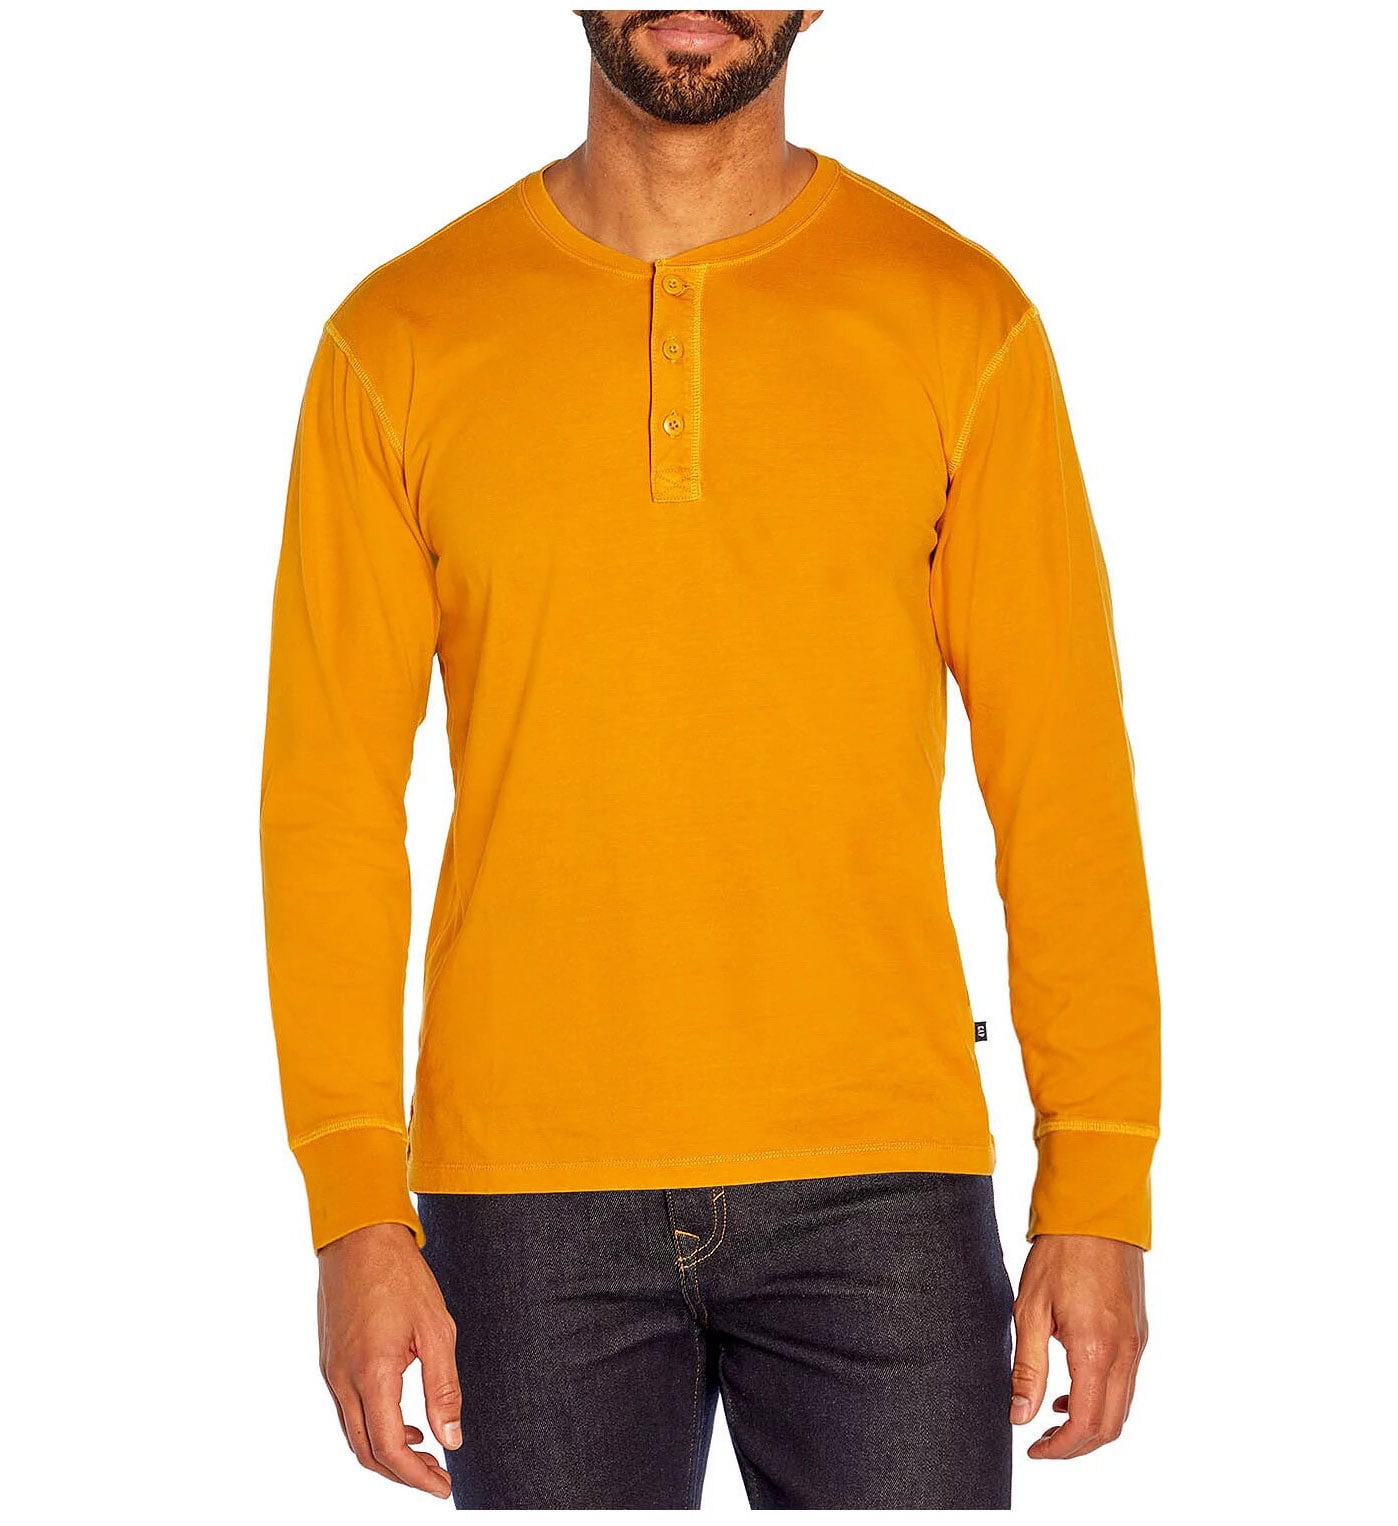 Gap Men's Long Sleeve Henley Shirt (Golden Yellow, XL)